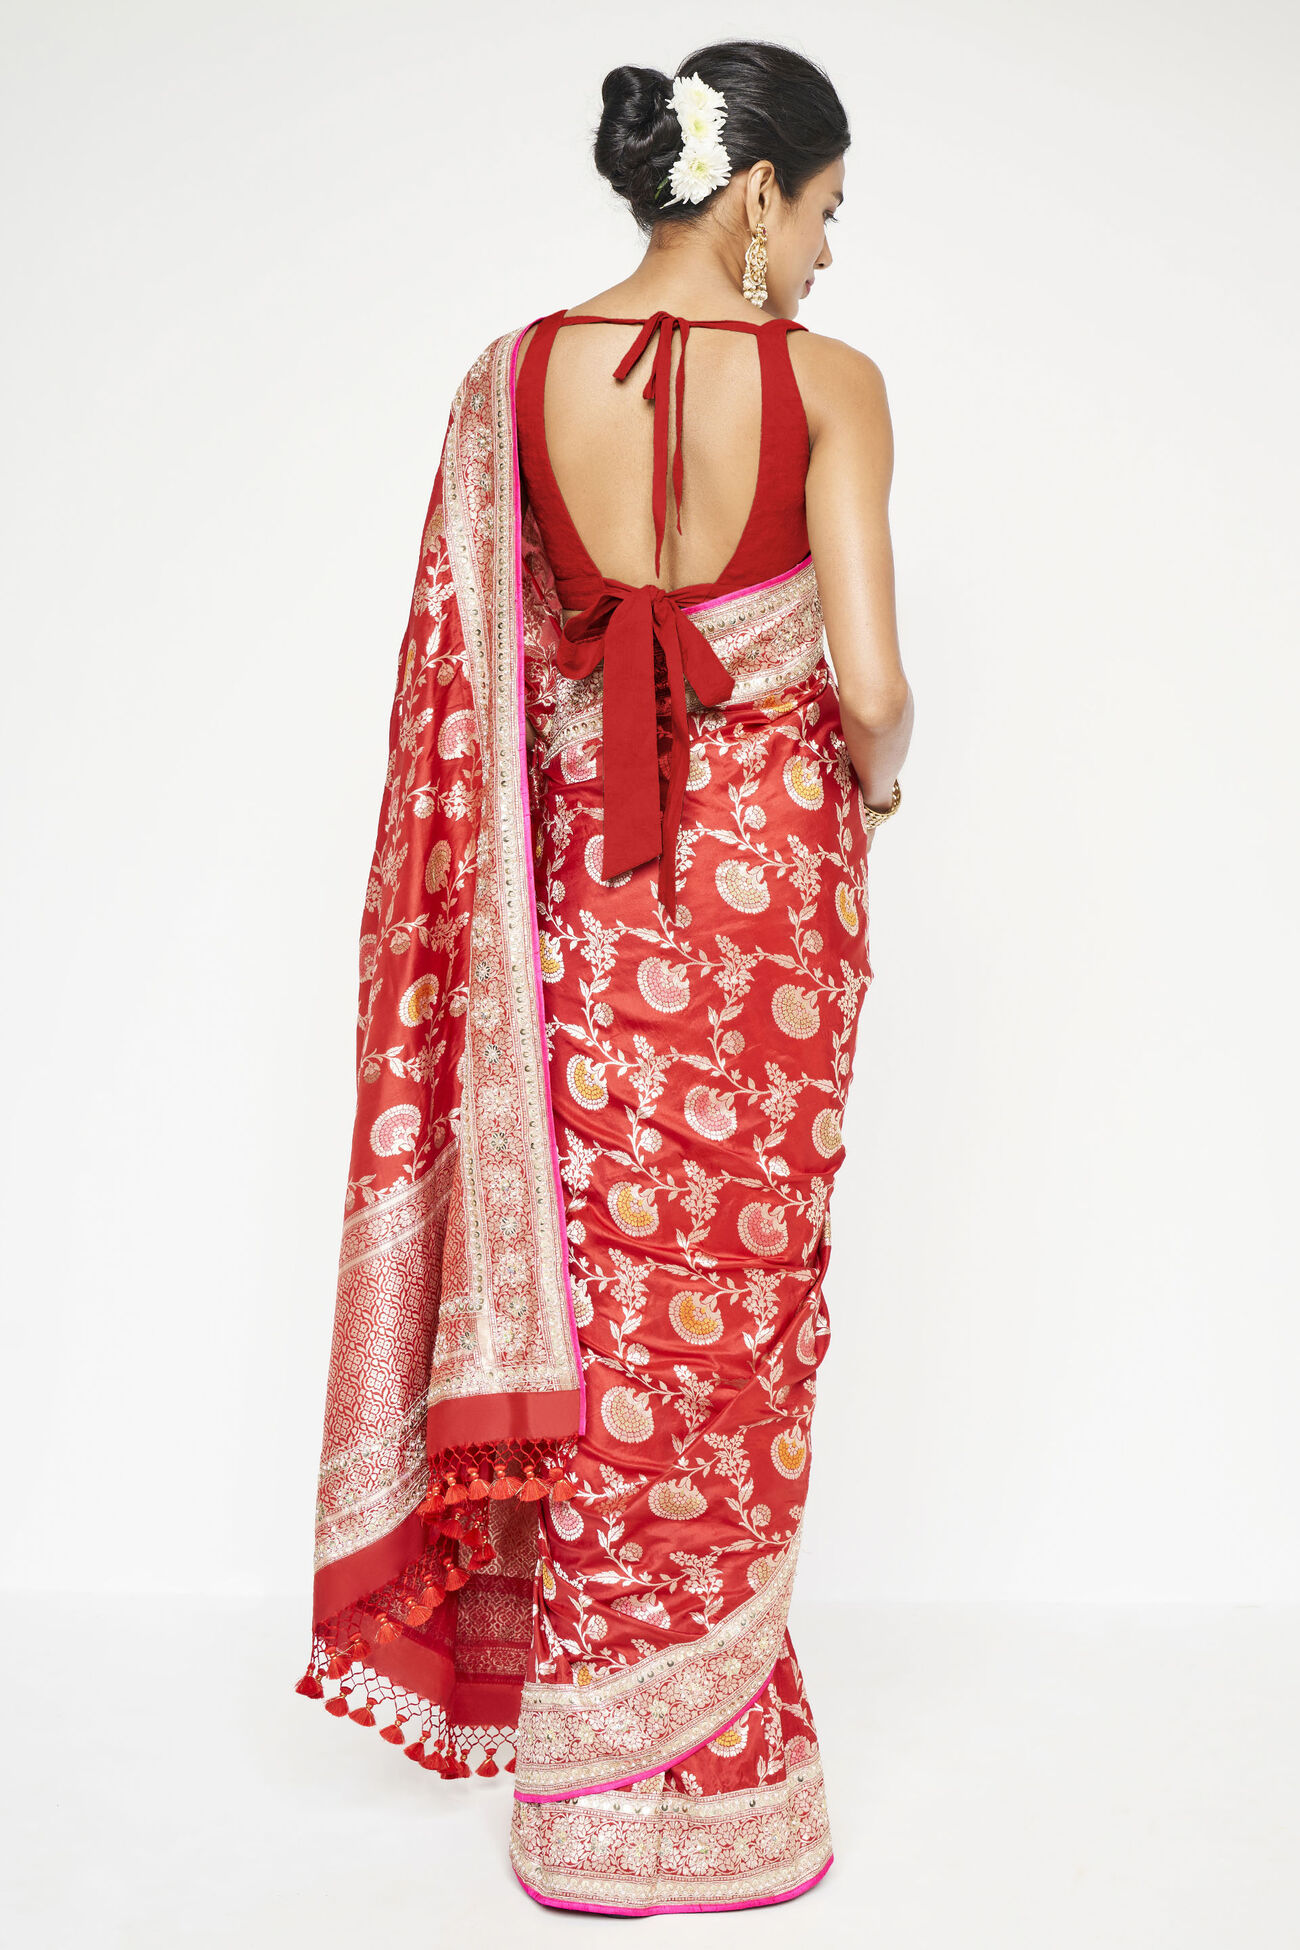 Ganika Benarasi Saree - Red, Red, image 2